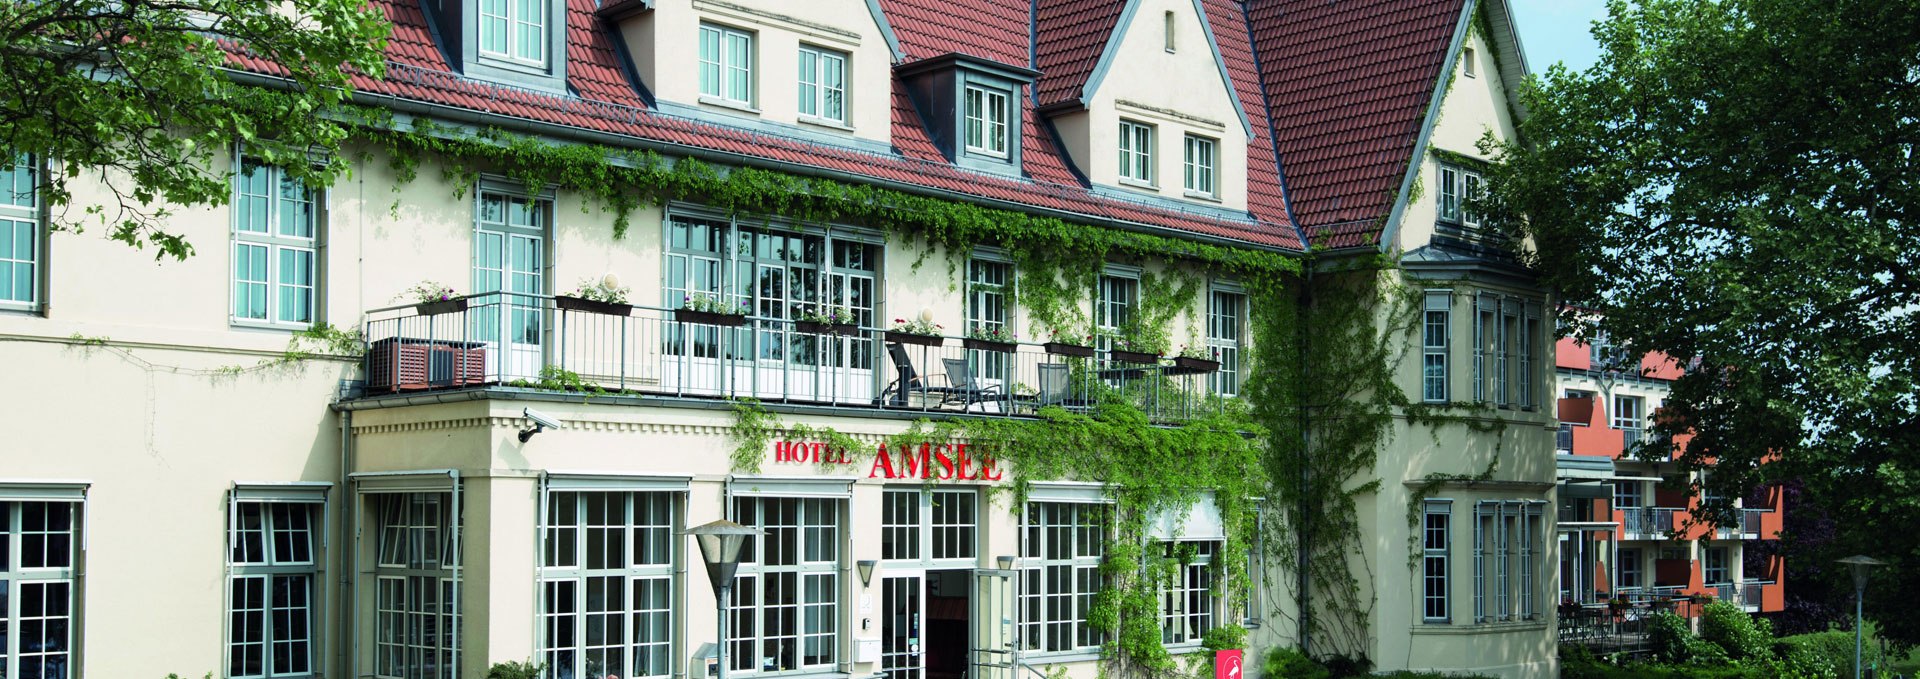 Außenansicht des Hauptgebäudes Amsee, © Hotel Amsee GmbH